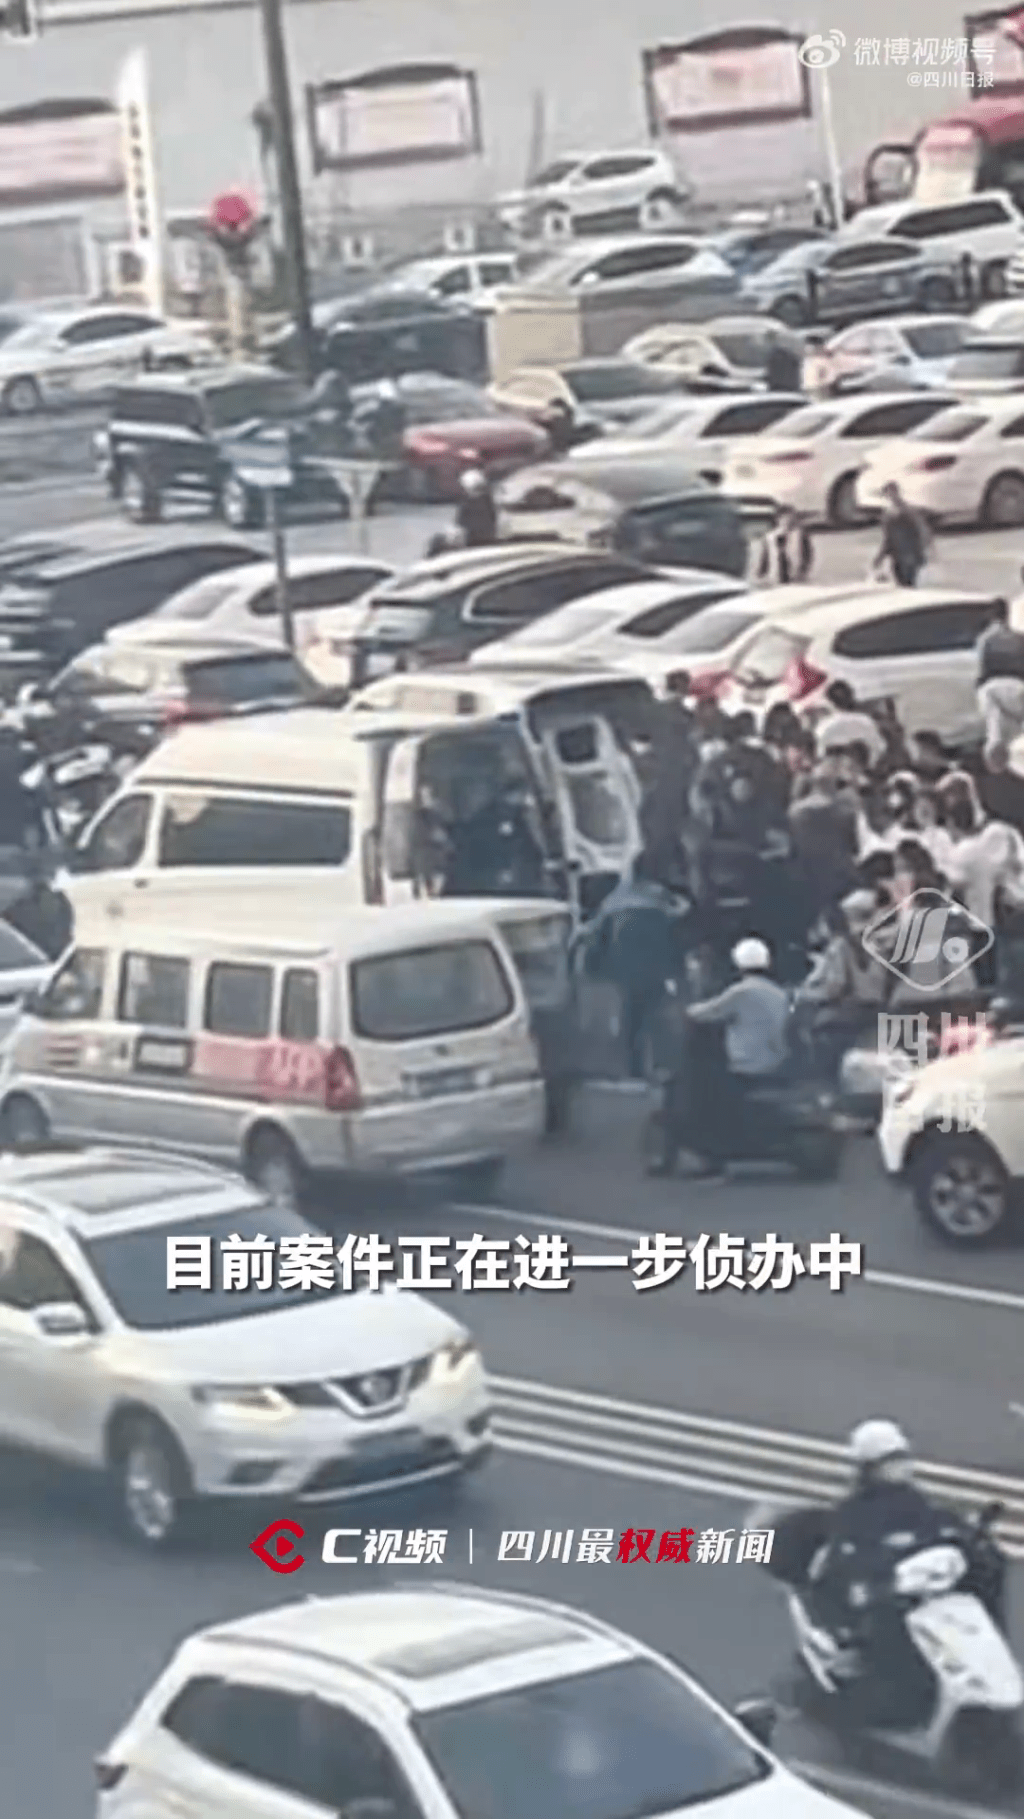 伤者被送往医院抢救无效死亡。 四川日报